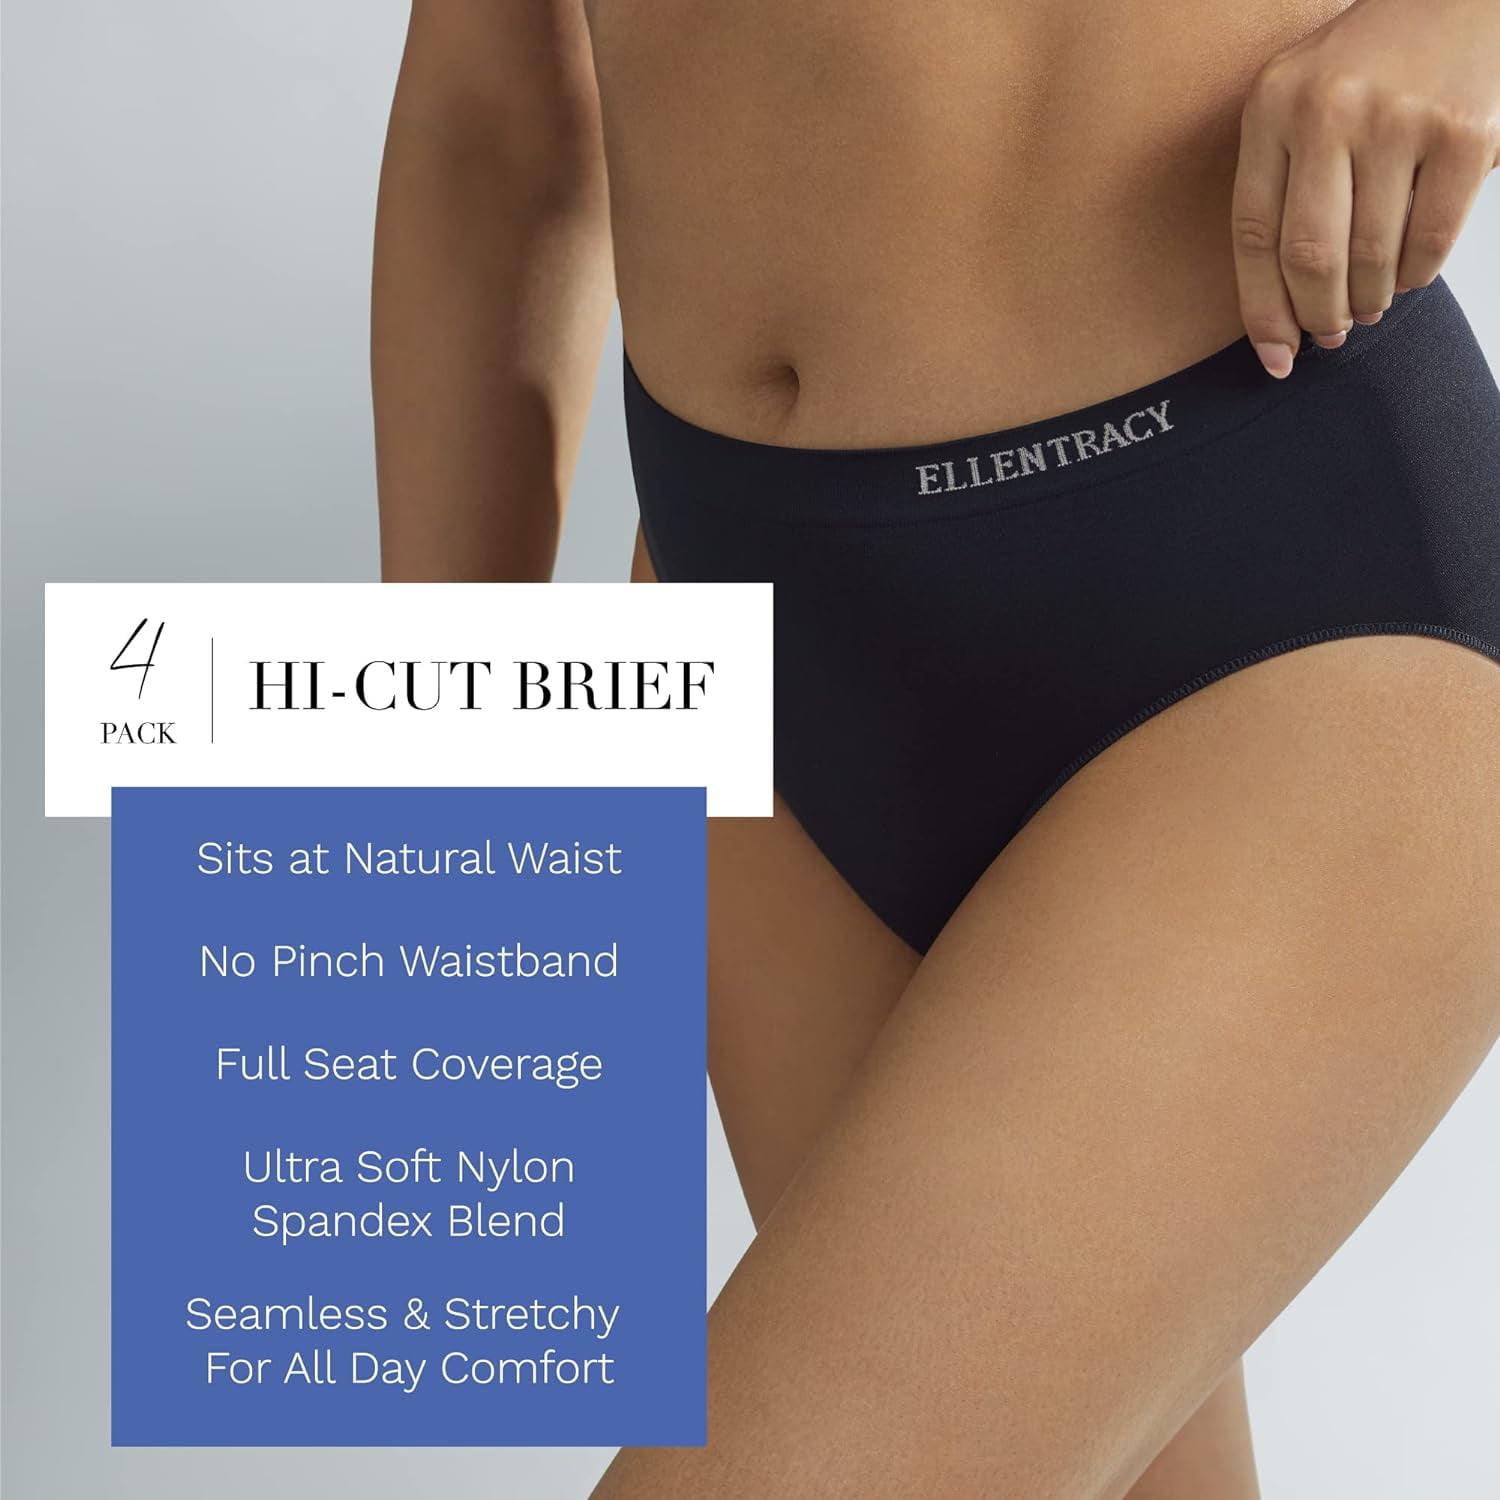 Ellen Tracy Women's Seamless Hi-Cut Panty, 4 Pack 